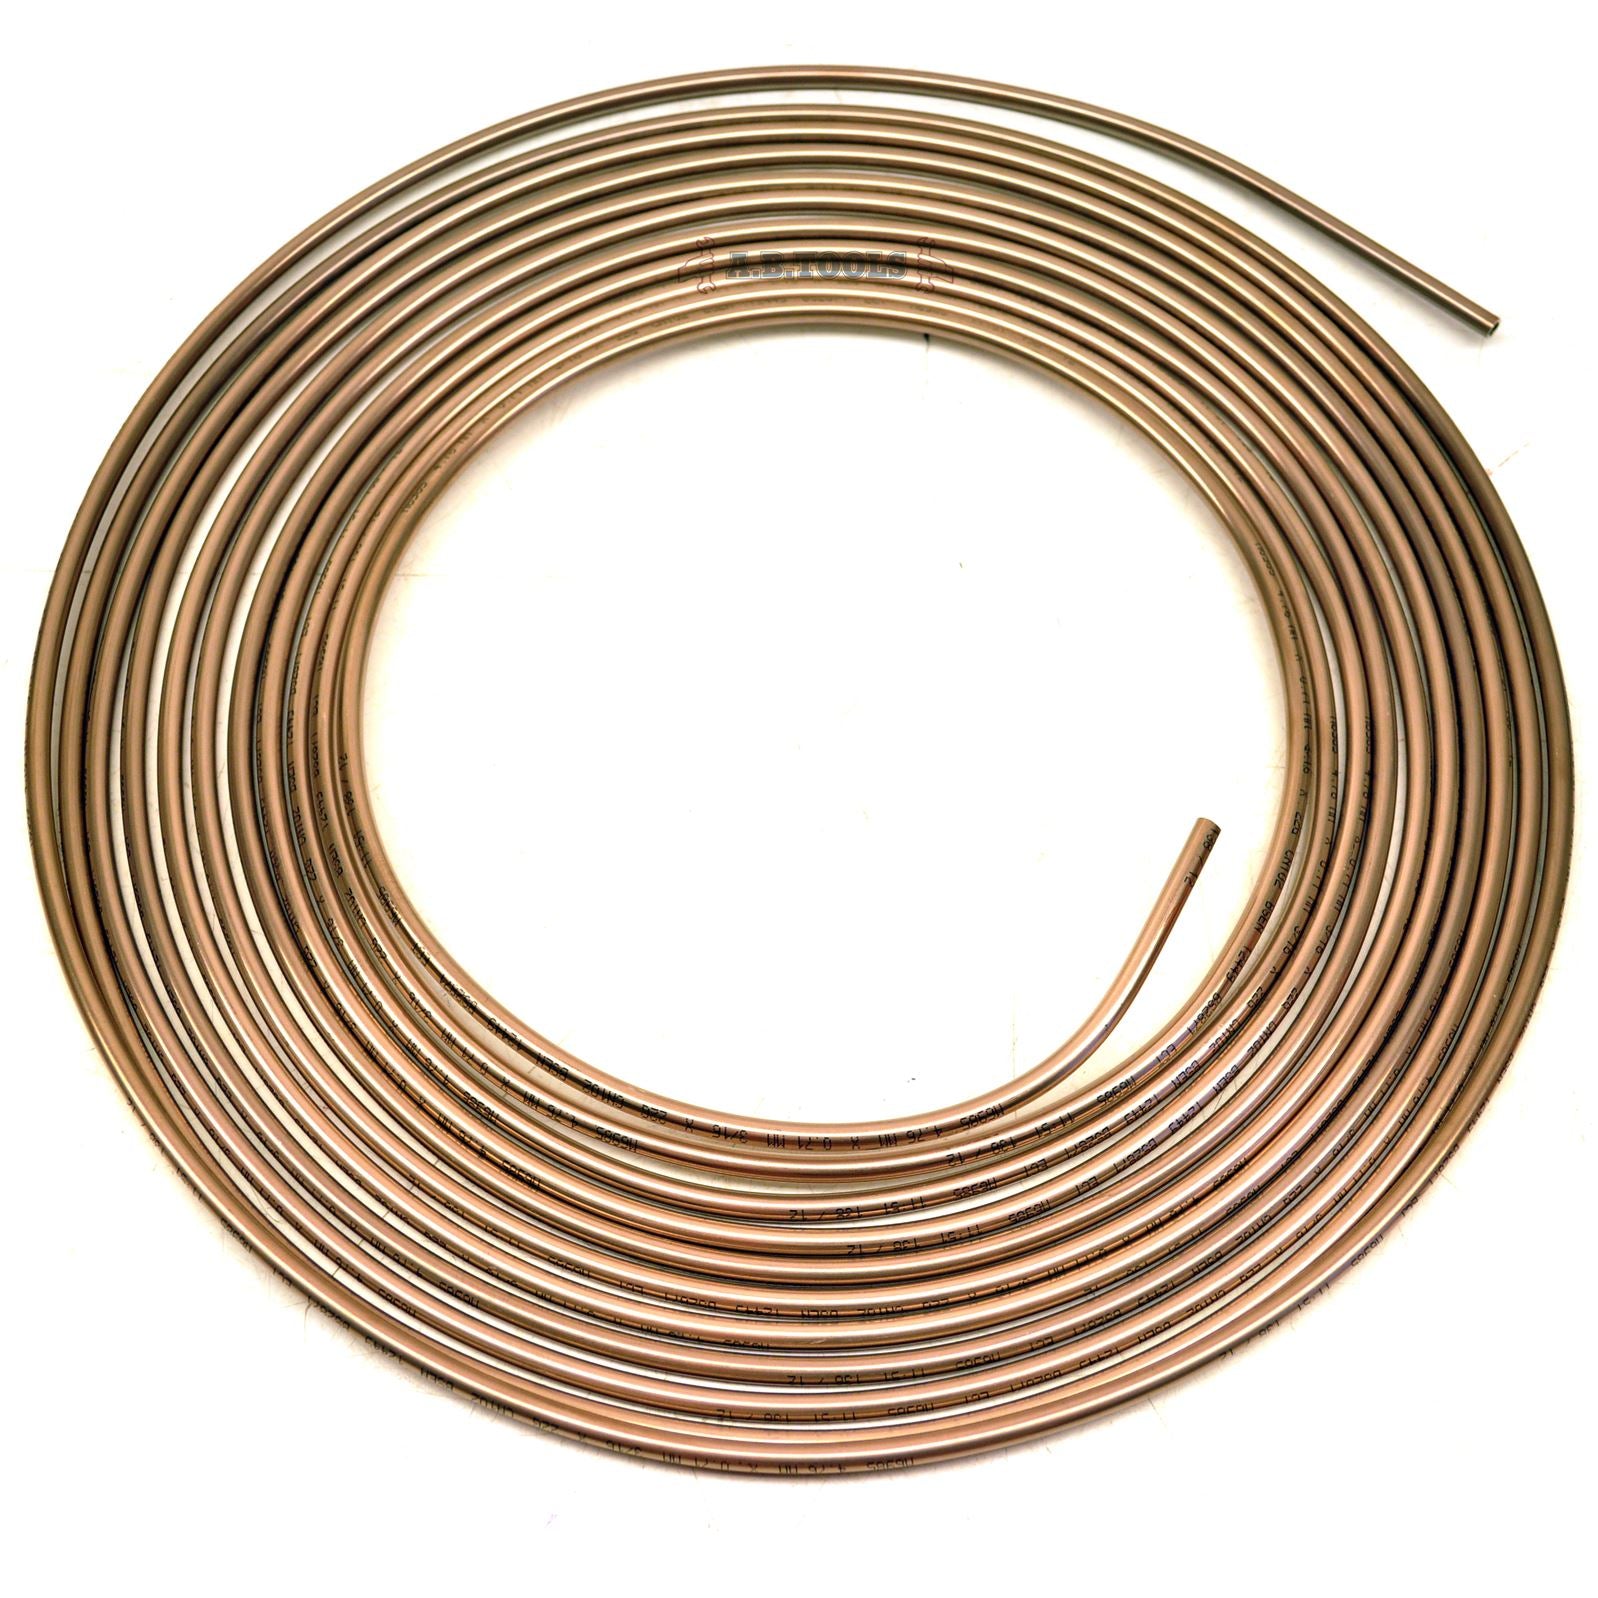 Brake Pipe Copper Nickel / Cunifier / Kunifier 7.62m Coil FL24